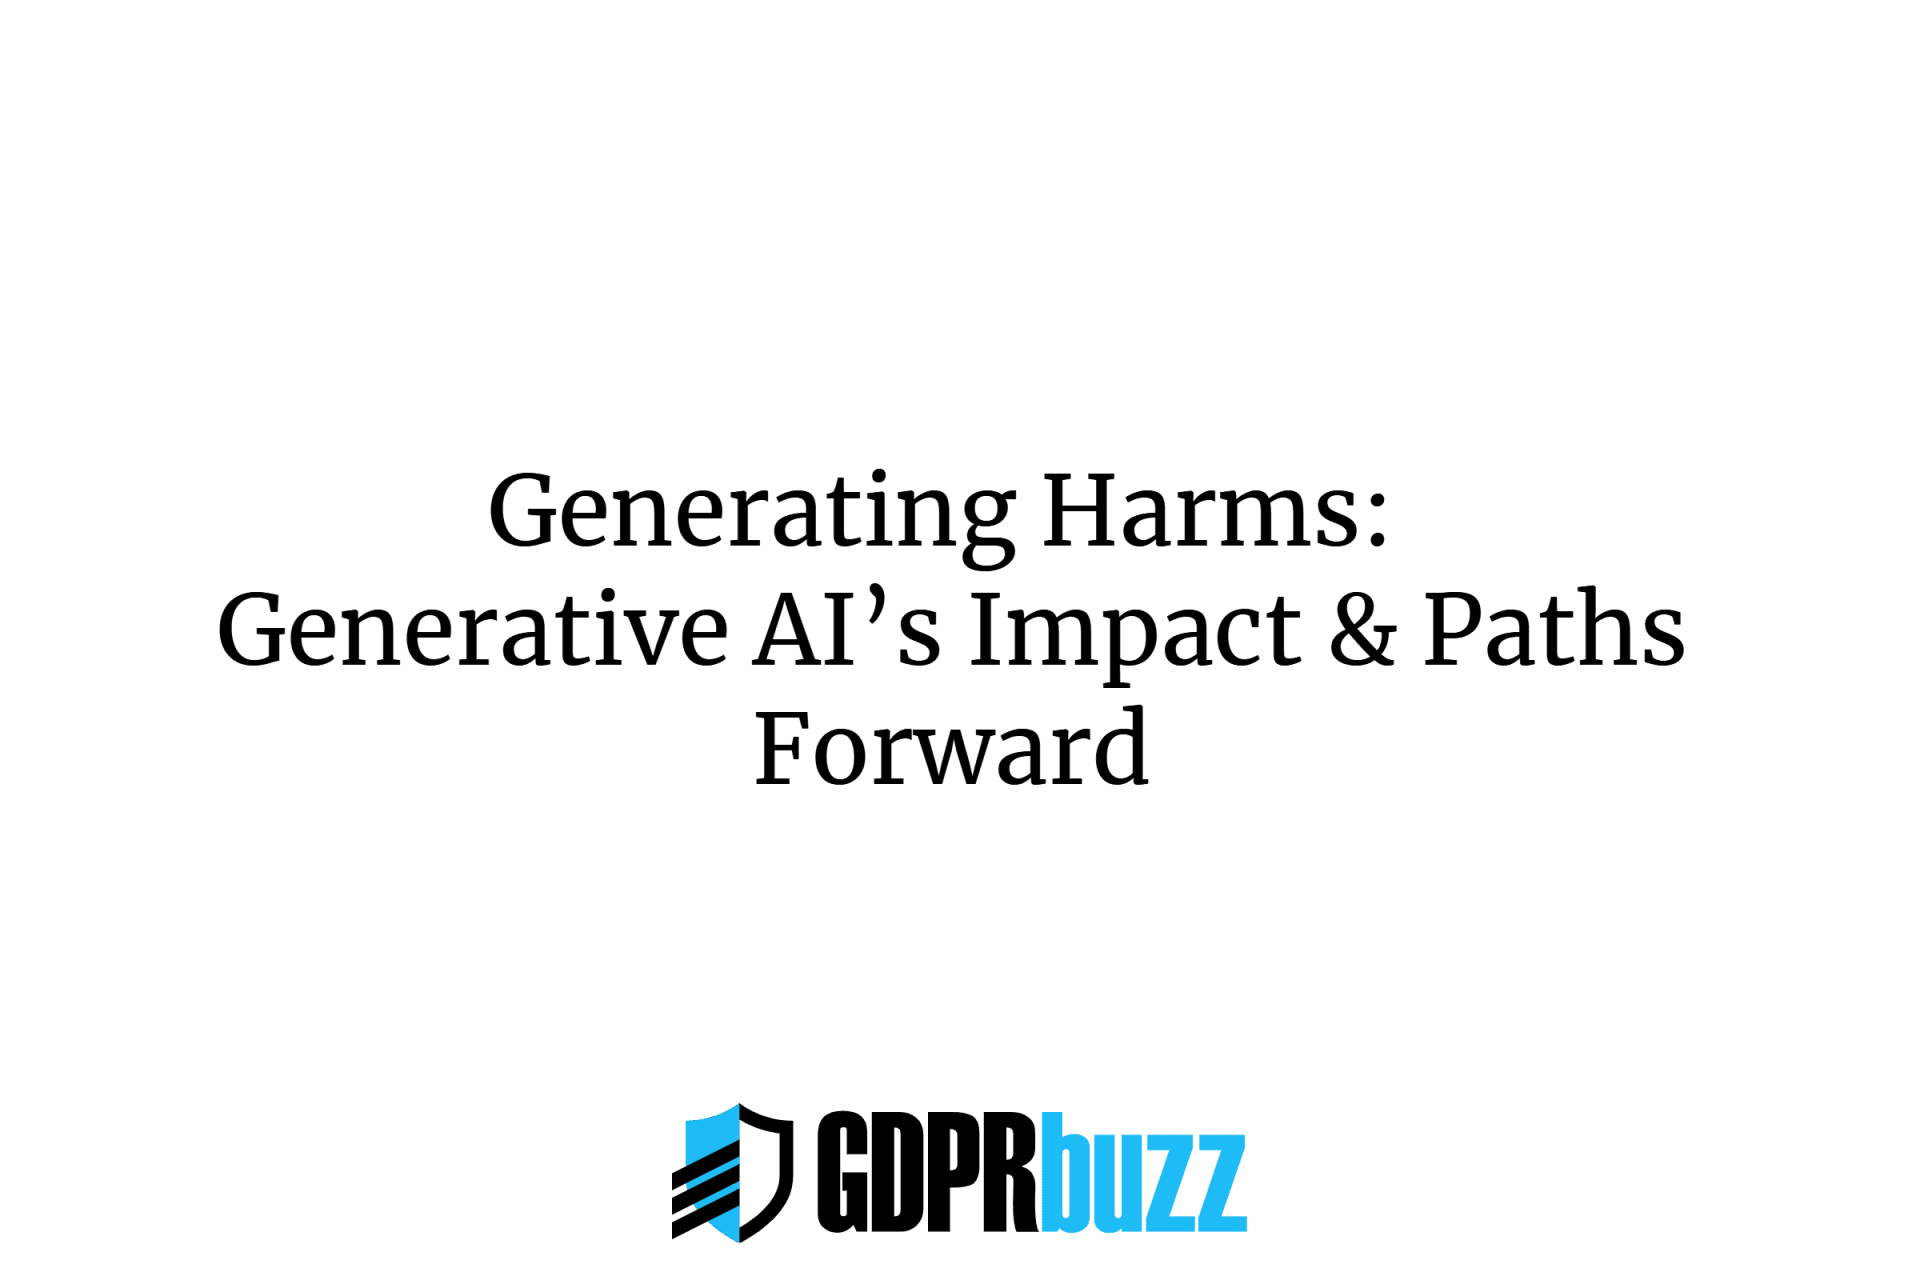 Generating harms: generative ai’s impact & paths forward